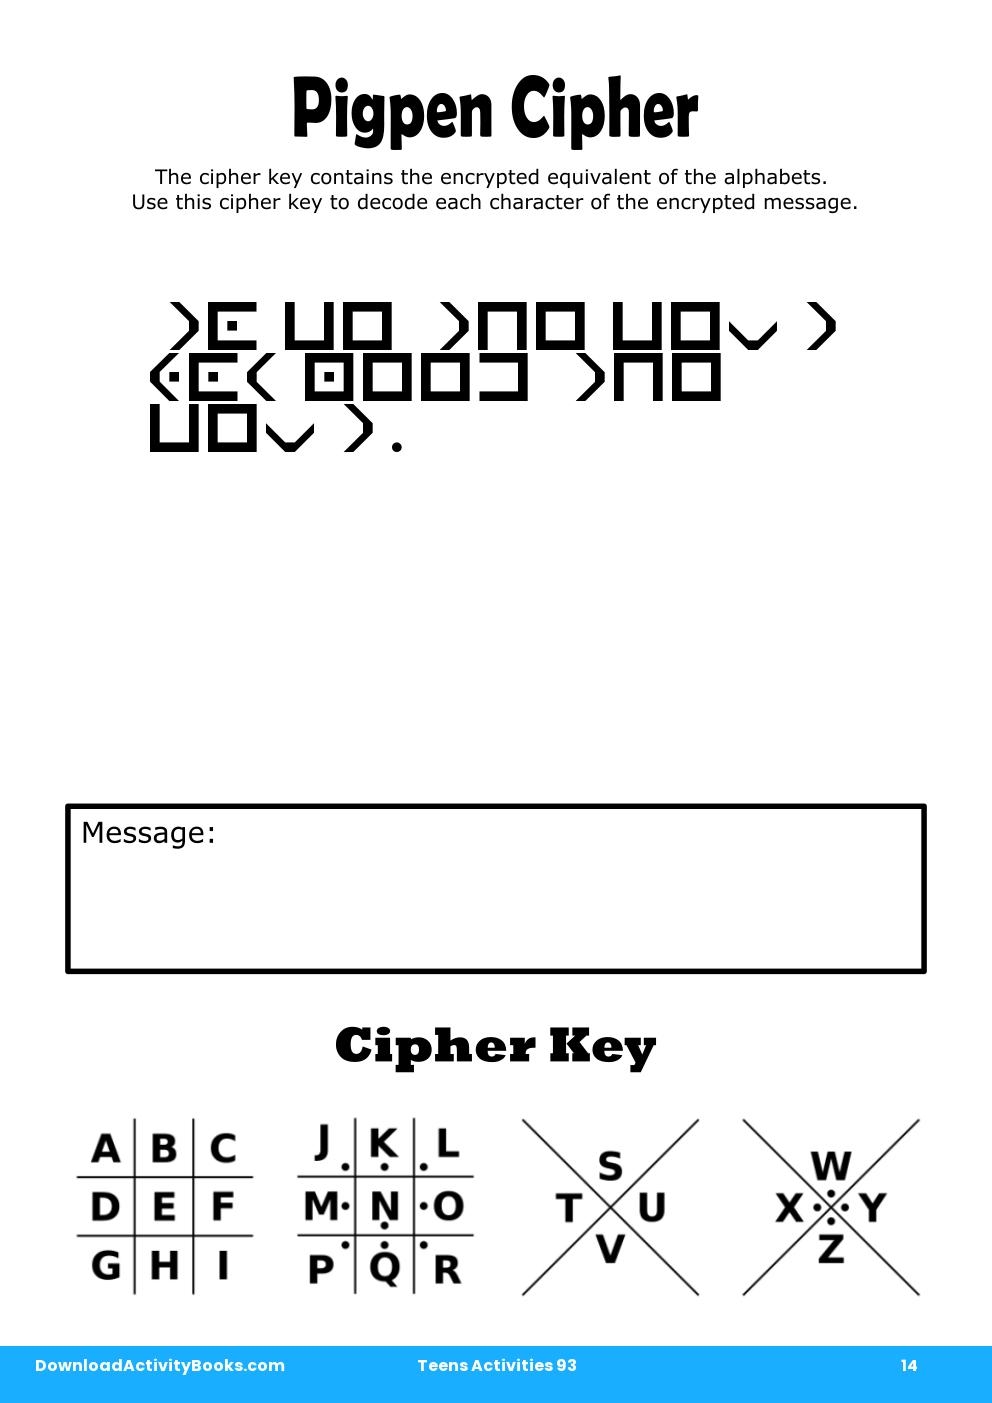 Pigpen Cipher in Teens Activities 93